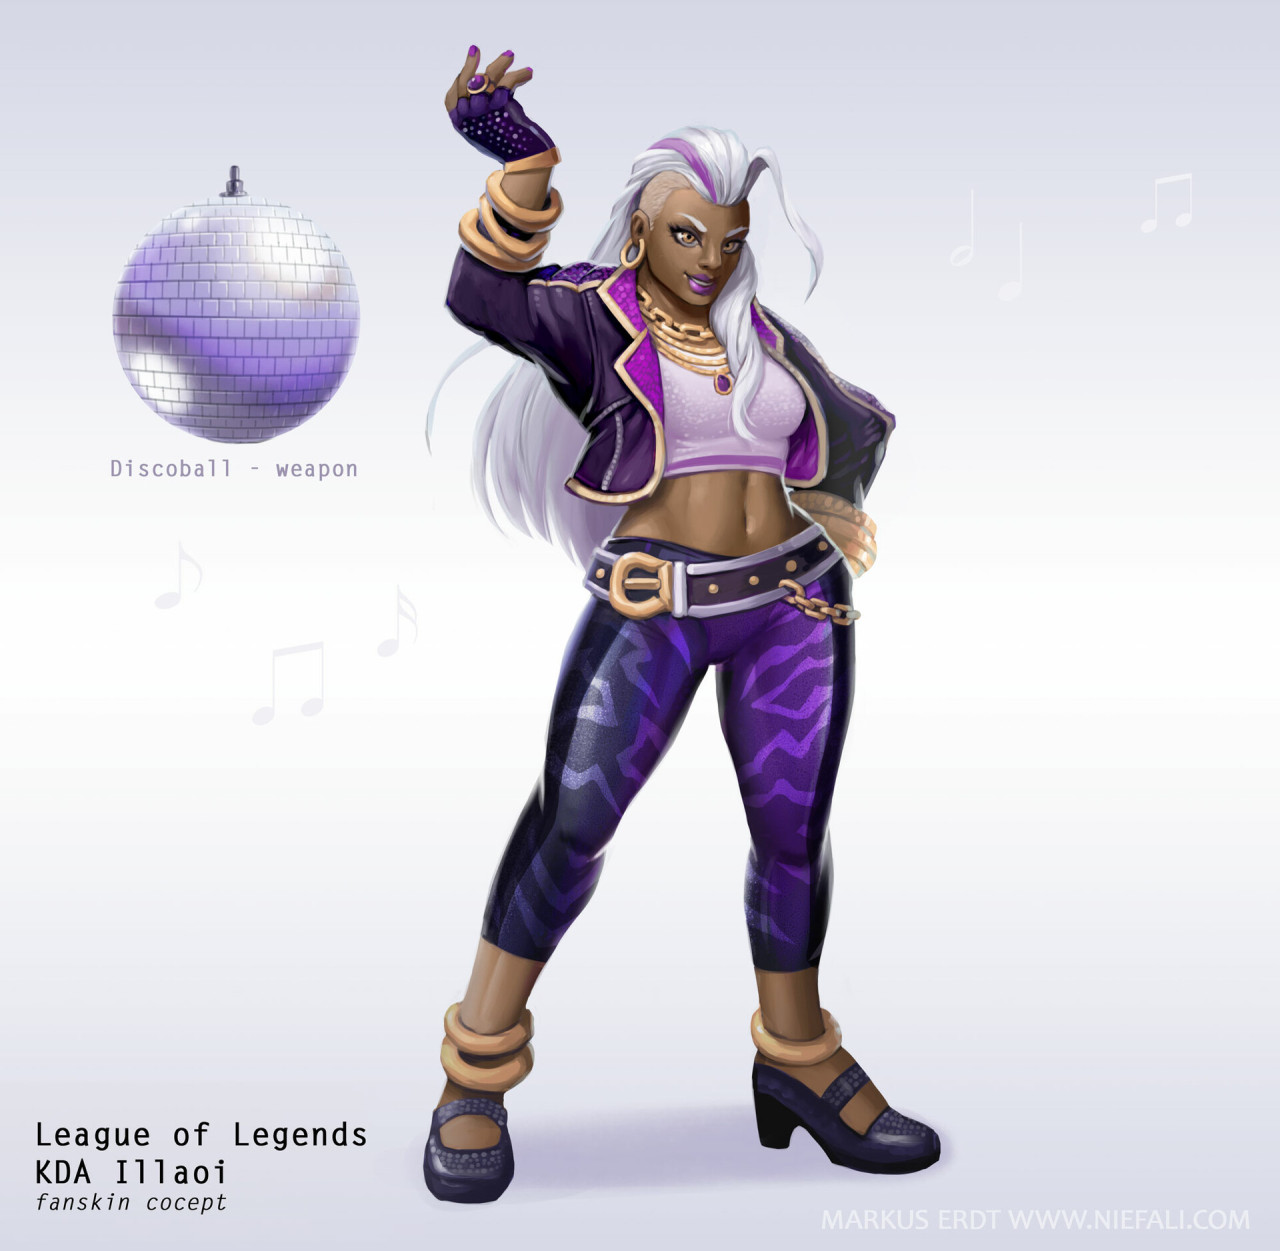 ♥『League of Legends』♥ — Illaoi Skin Concepts by Markus Erdt